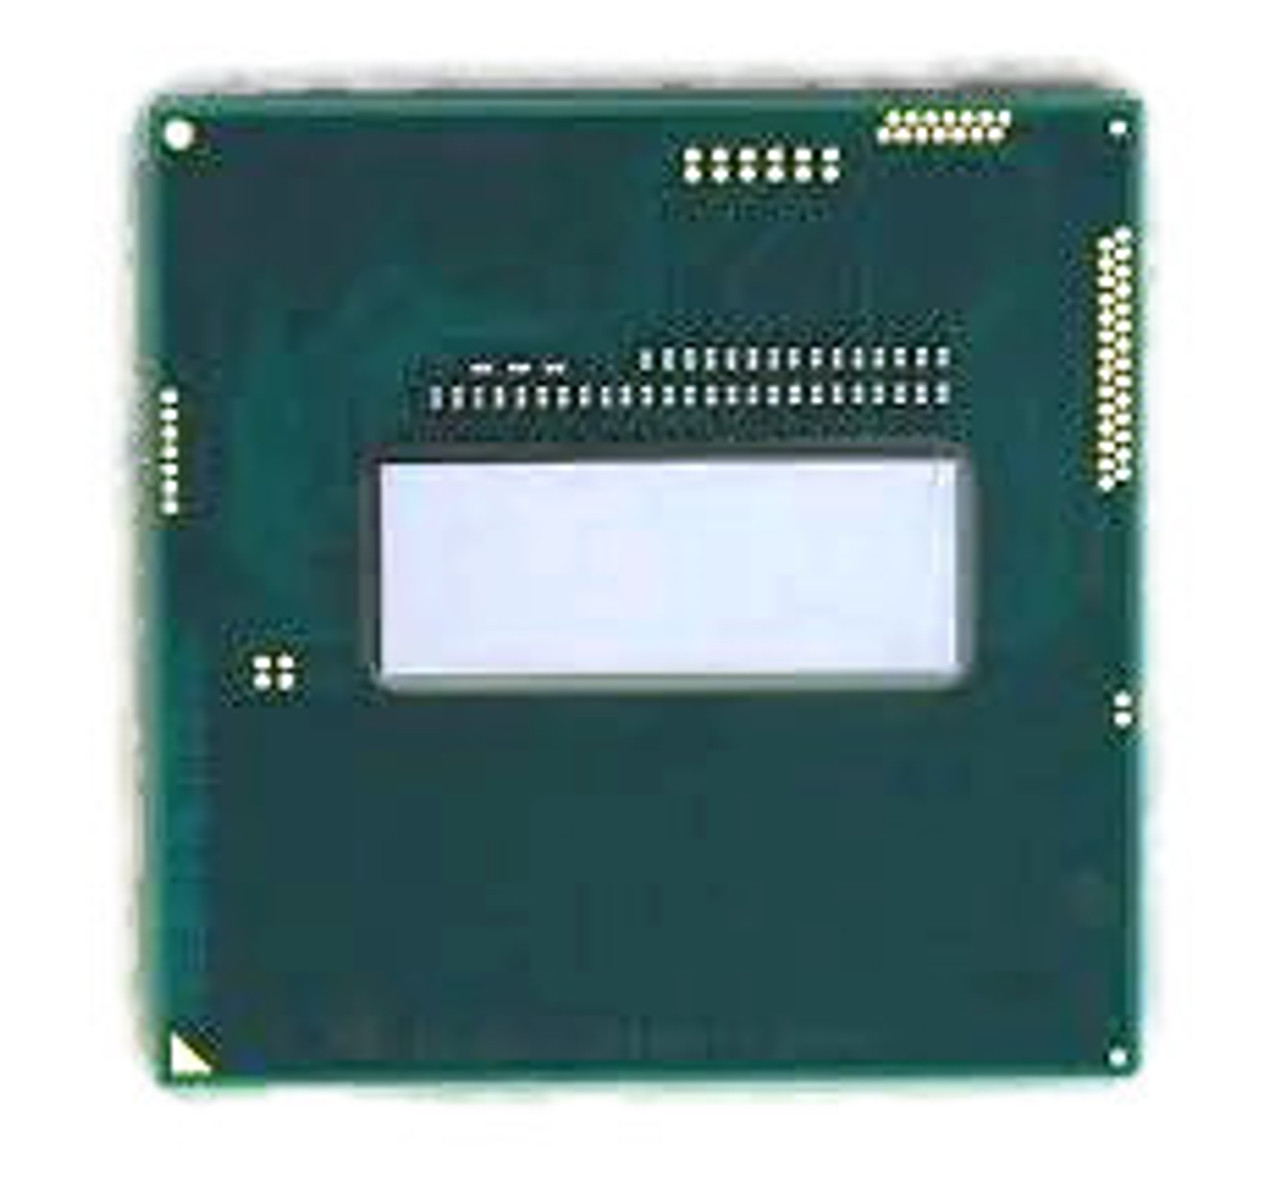 Genuine Intel i7-4700MQ 6MB L3 Cache 2.40GHz CPU Processor SR15H